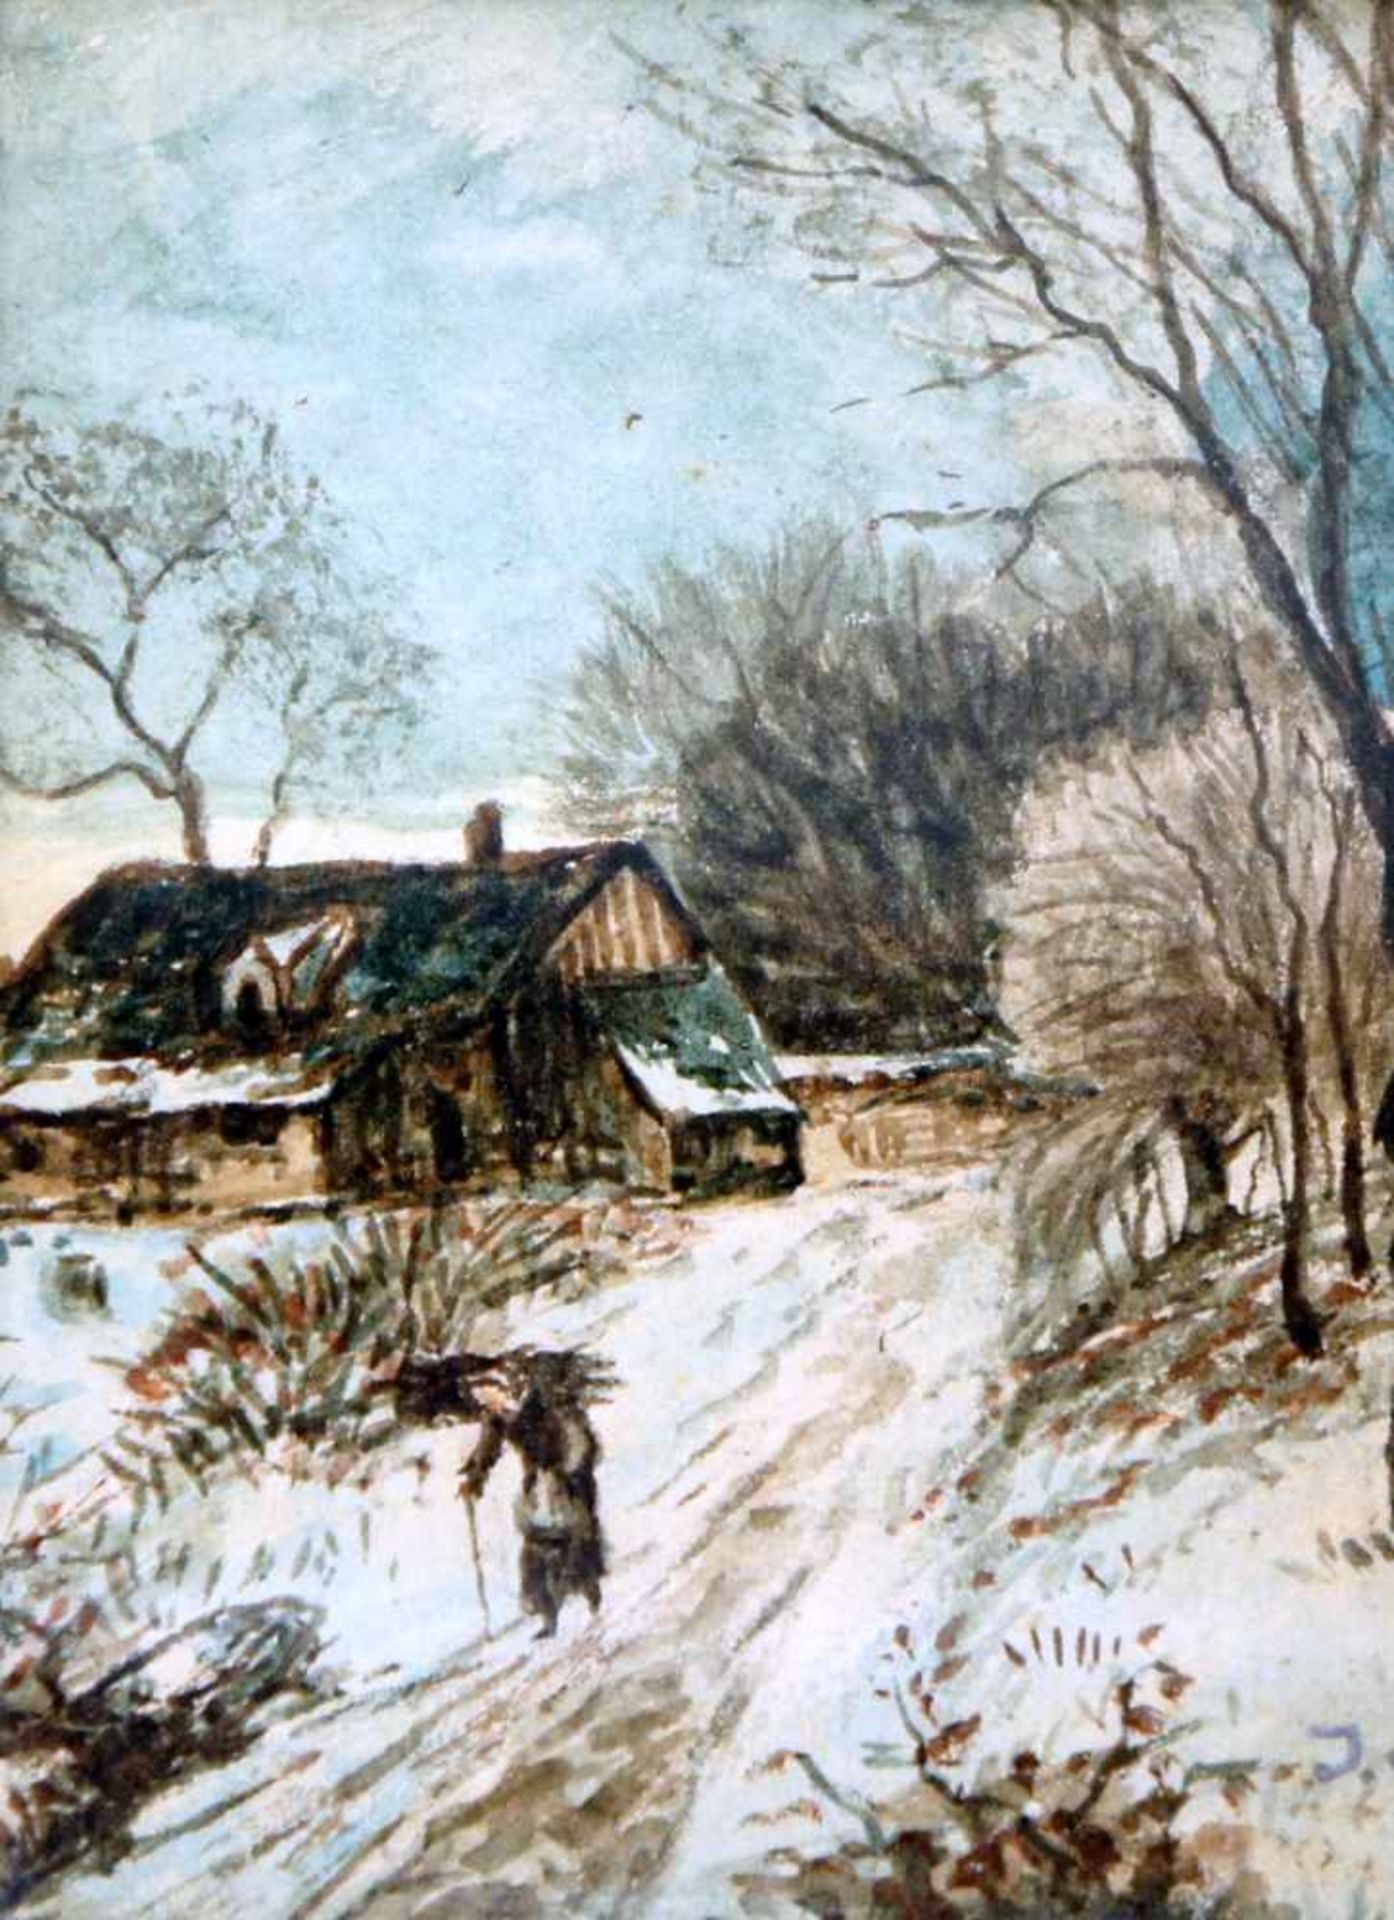 Winterliche Landschaft mit HolzsammlerinAquarell/Papier. Verschneiter Feldweg mit Holzsammlerin